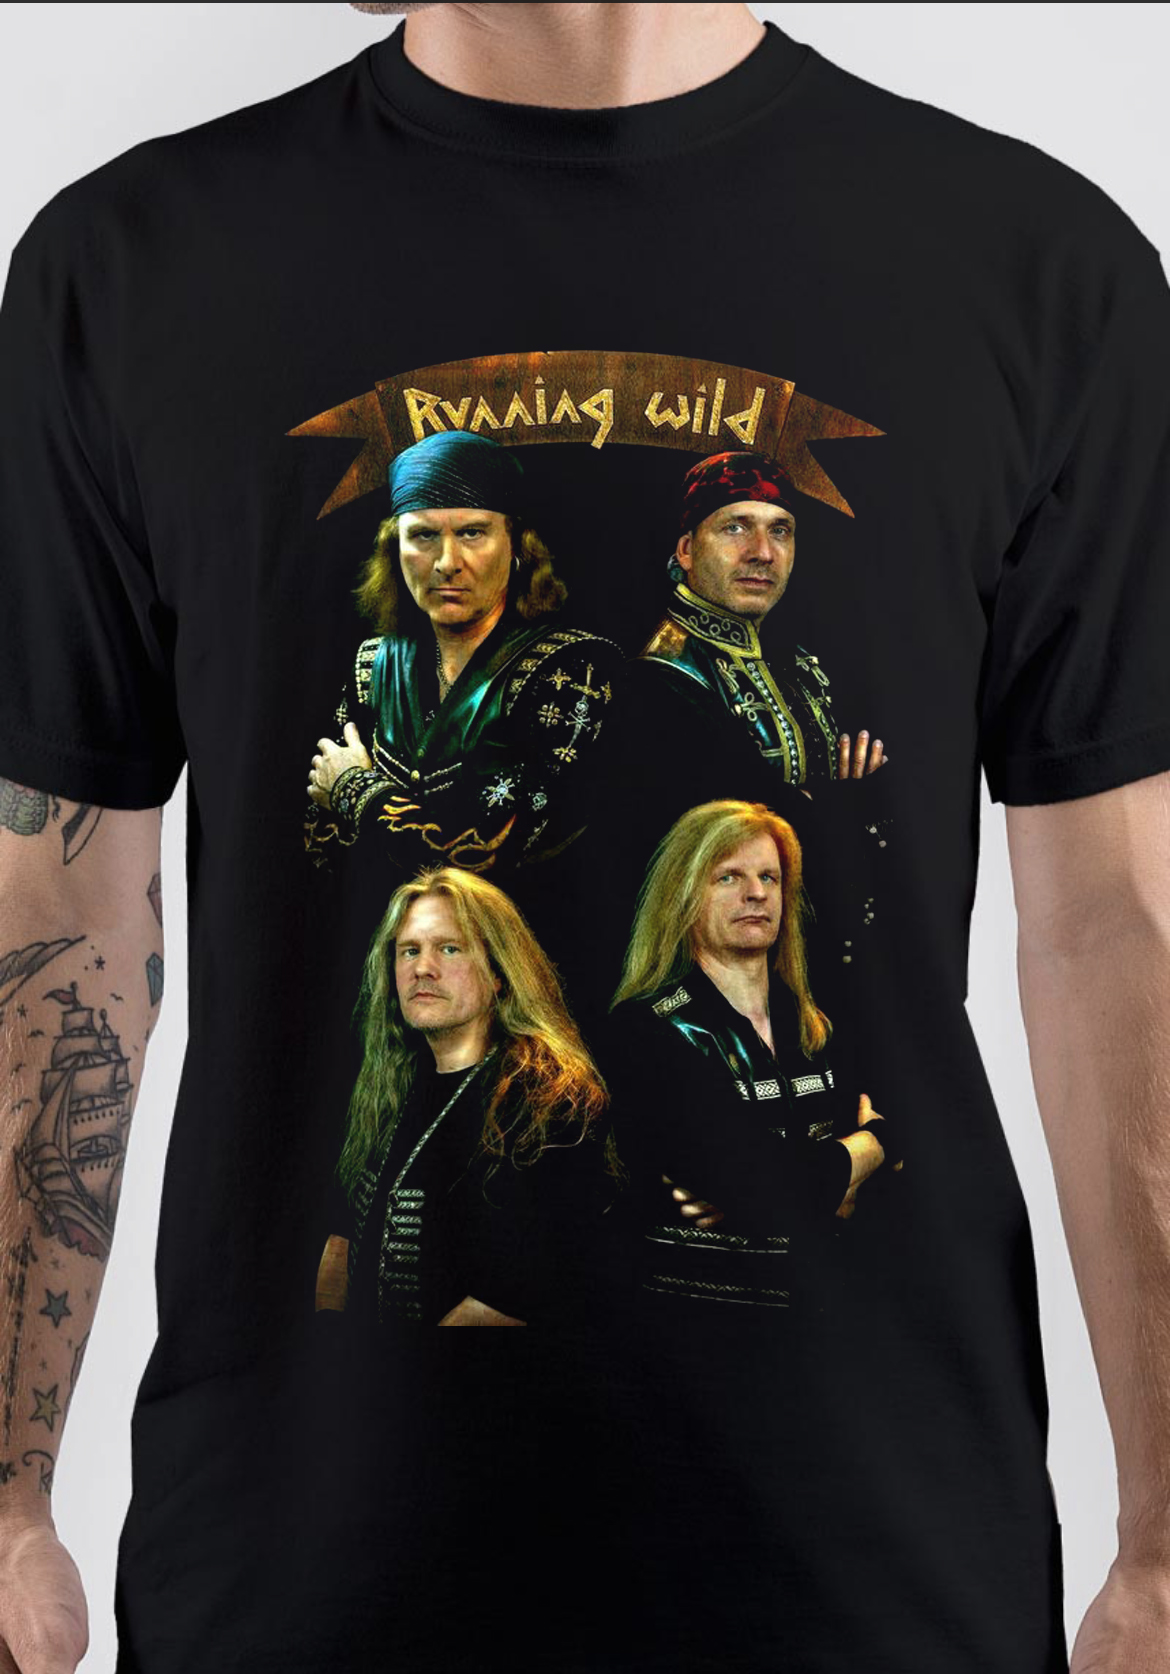 Running Wild Band T-Shirt And Merchandise